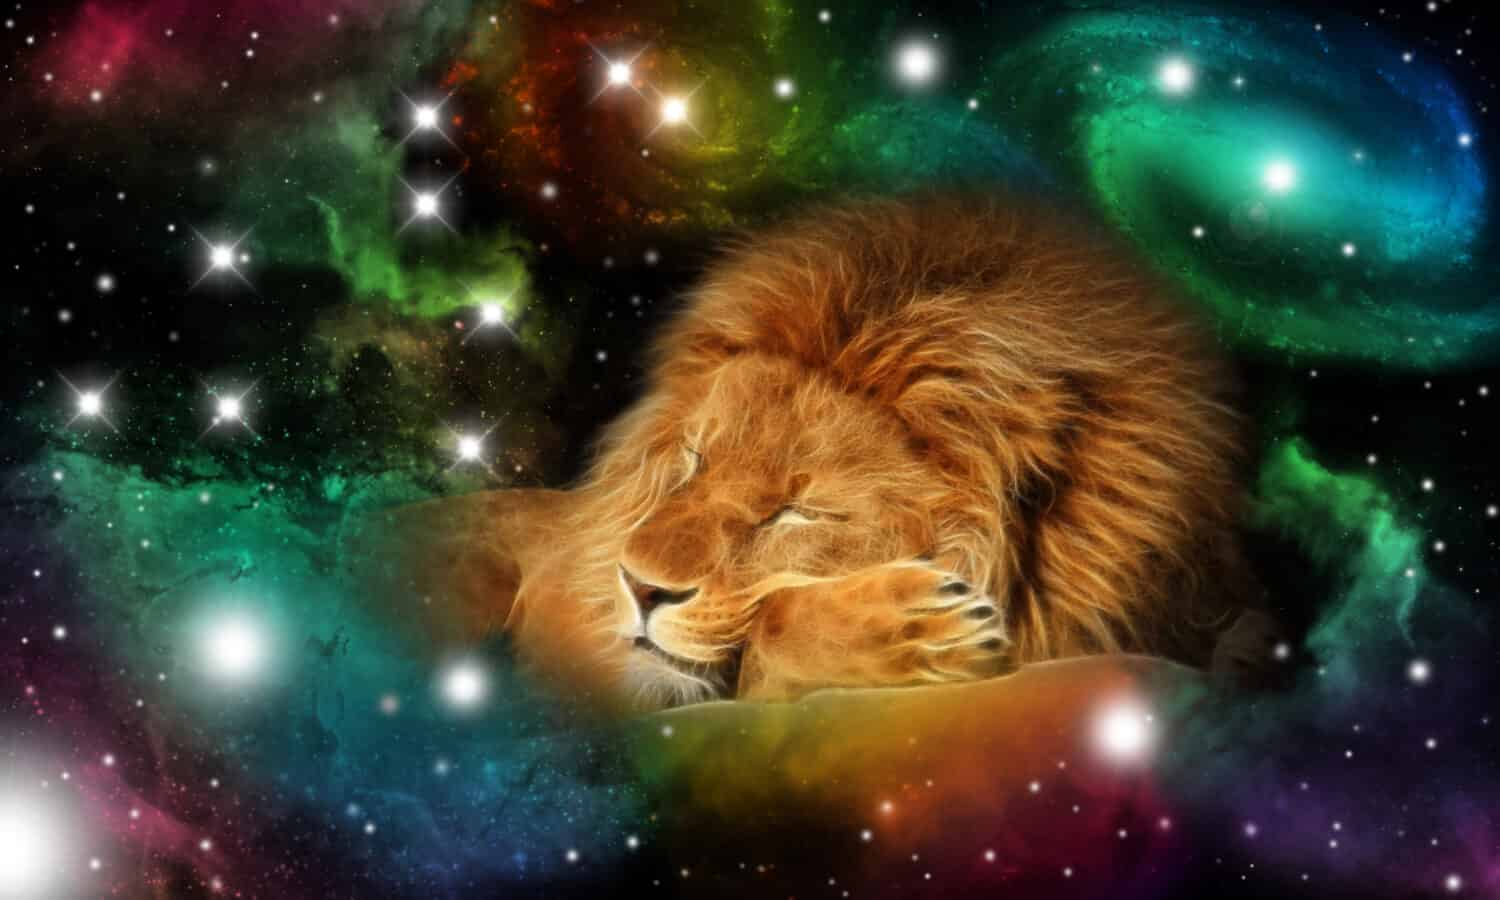 segno dello zodiaco leo - ritratto di un leone in un universo colorato con alcune galassie e stelle